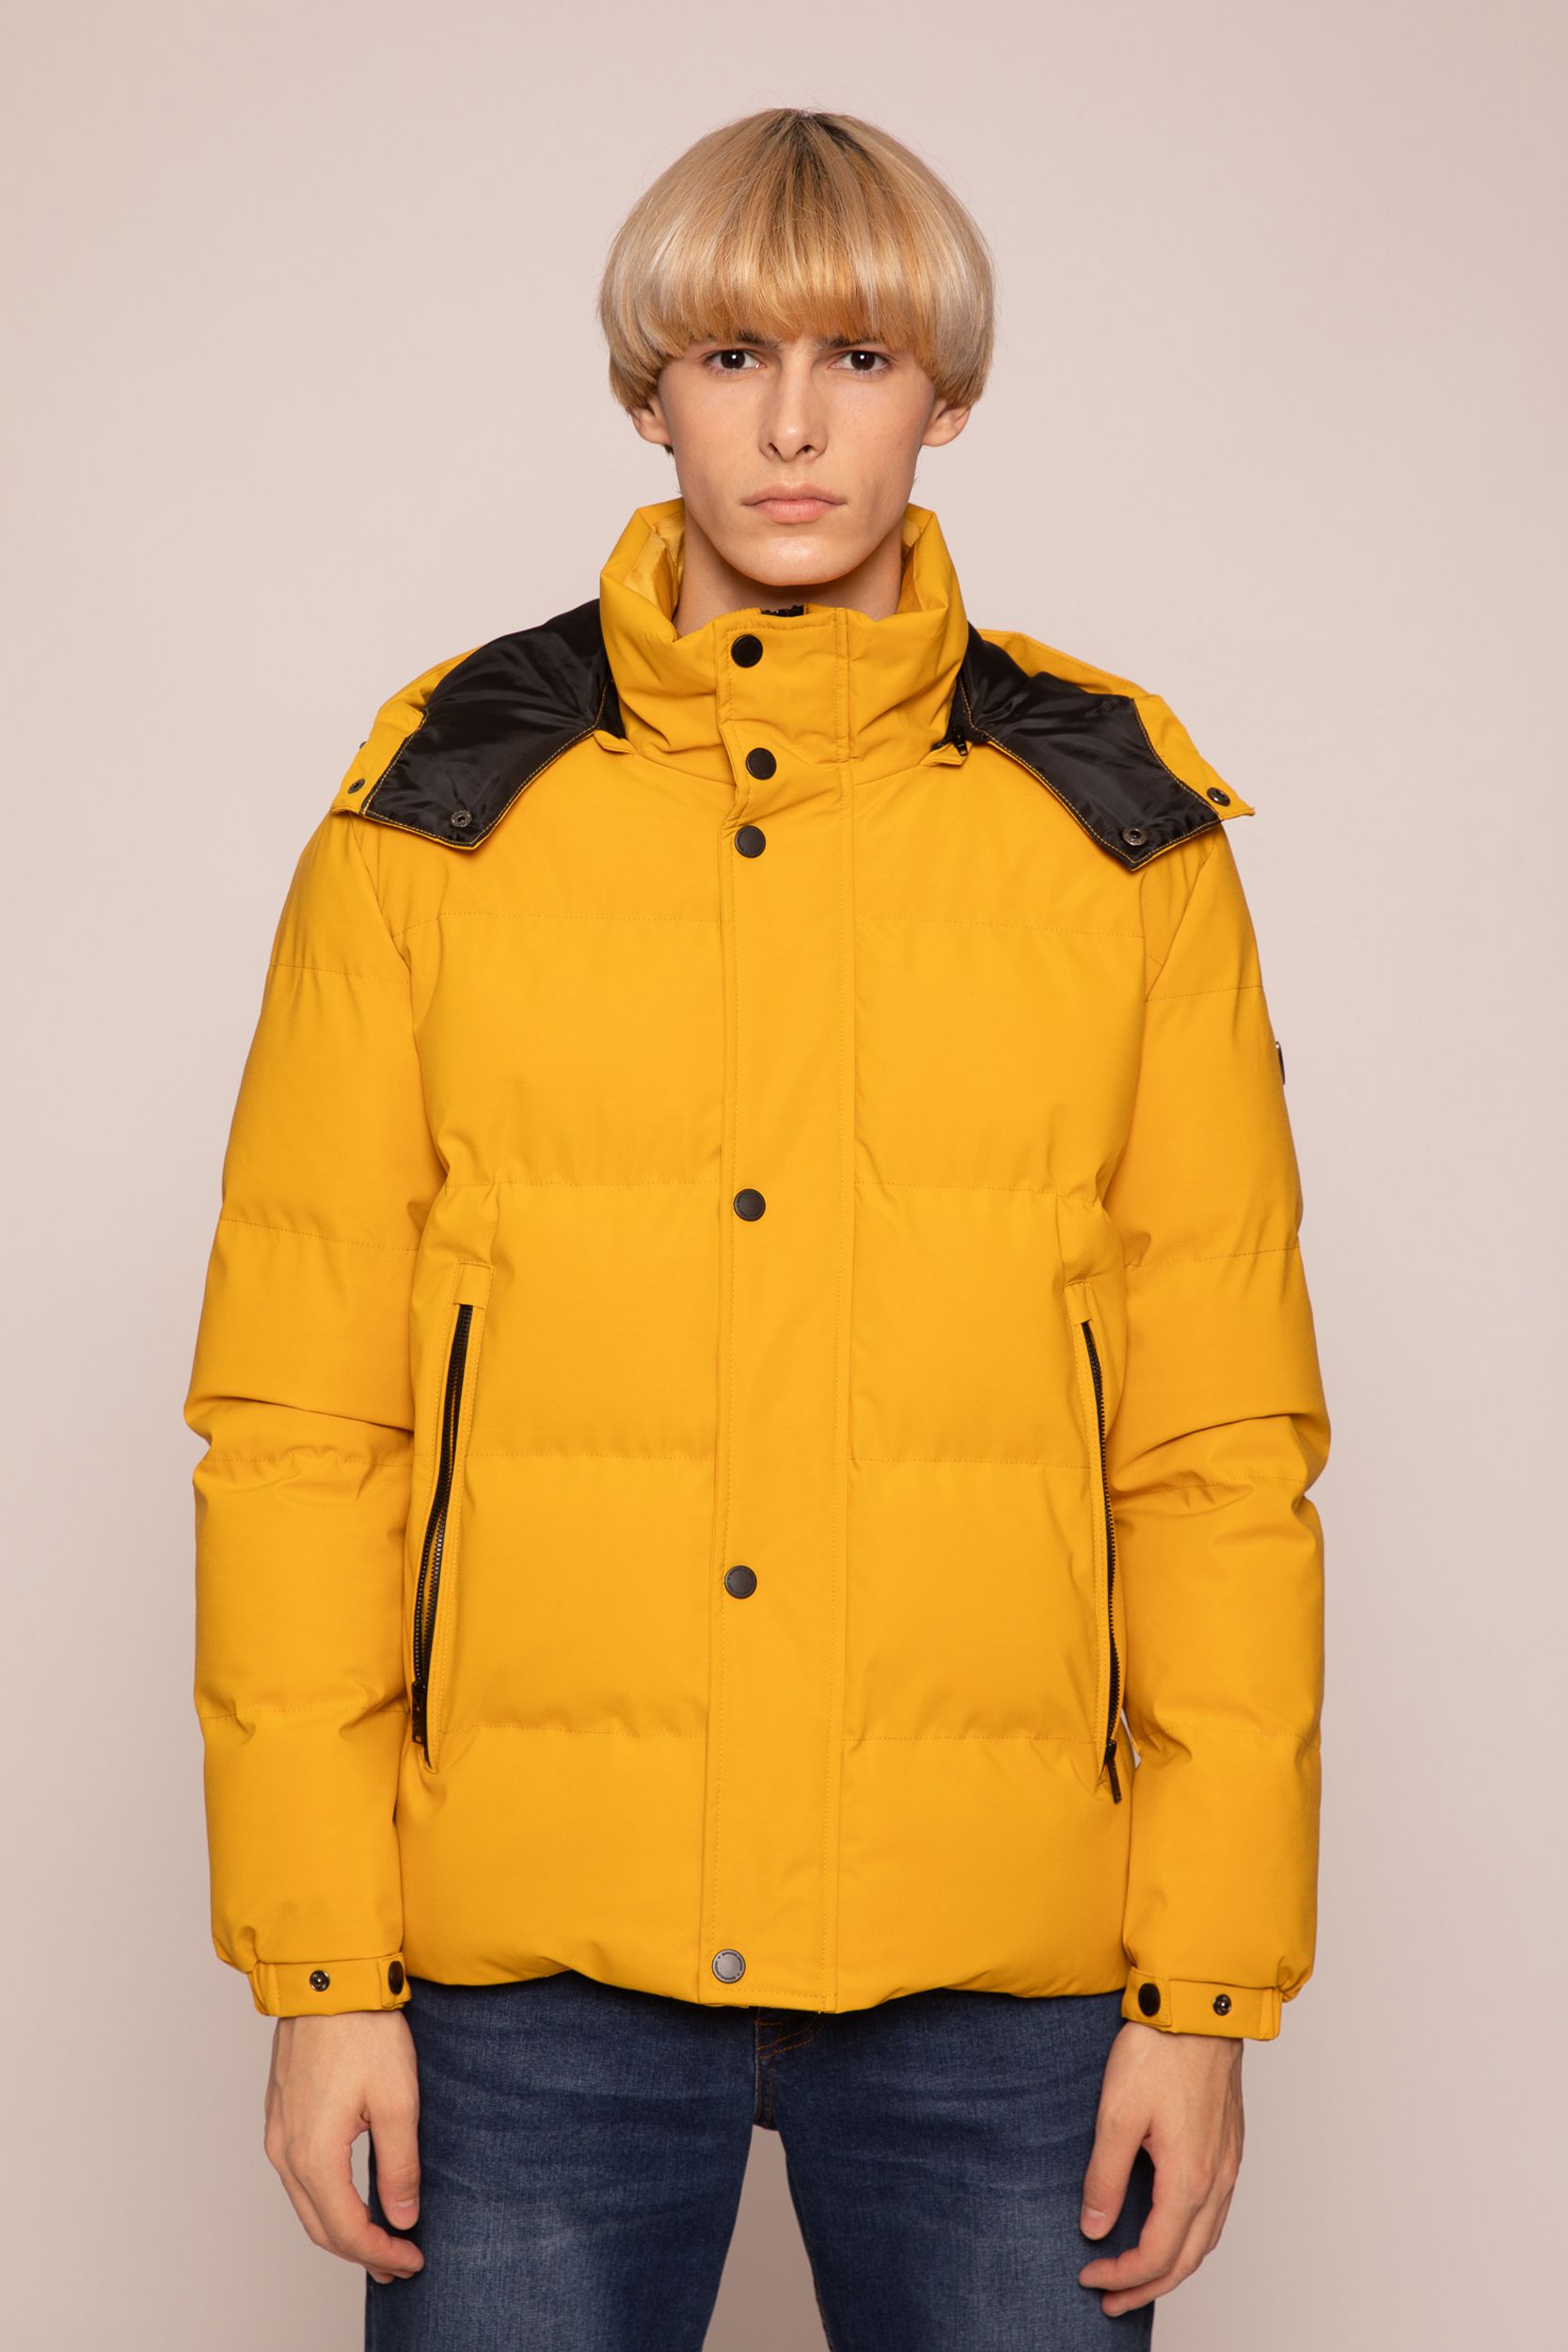 KOZI kabát (yellow)